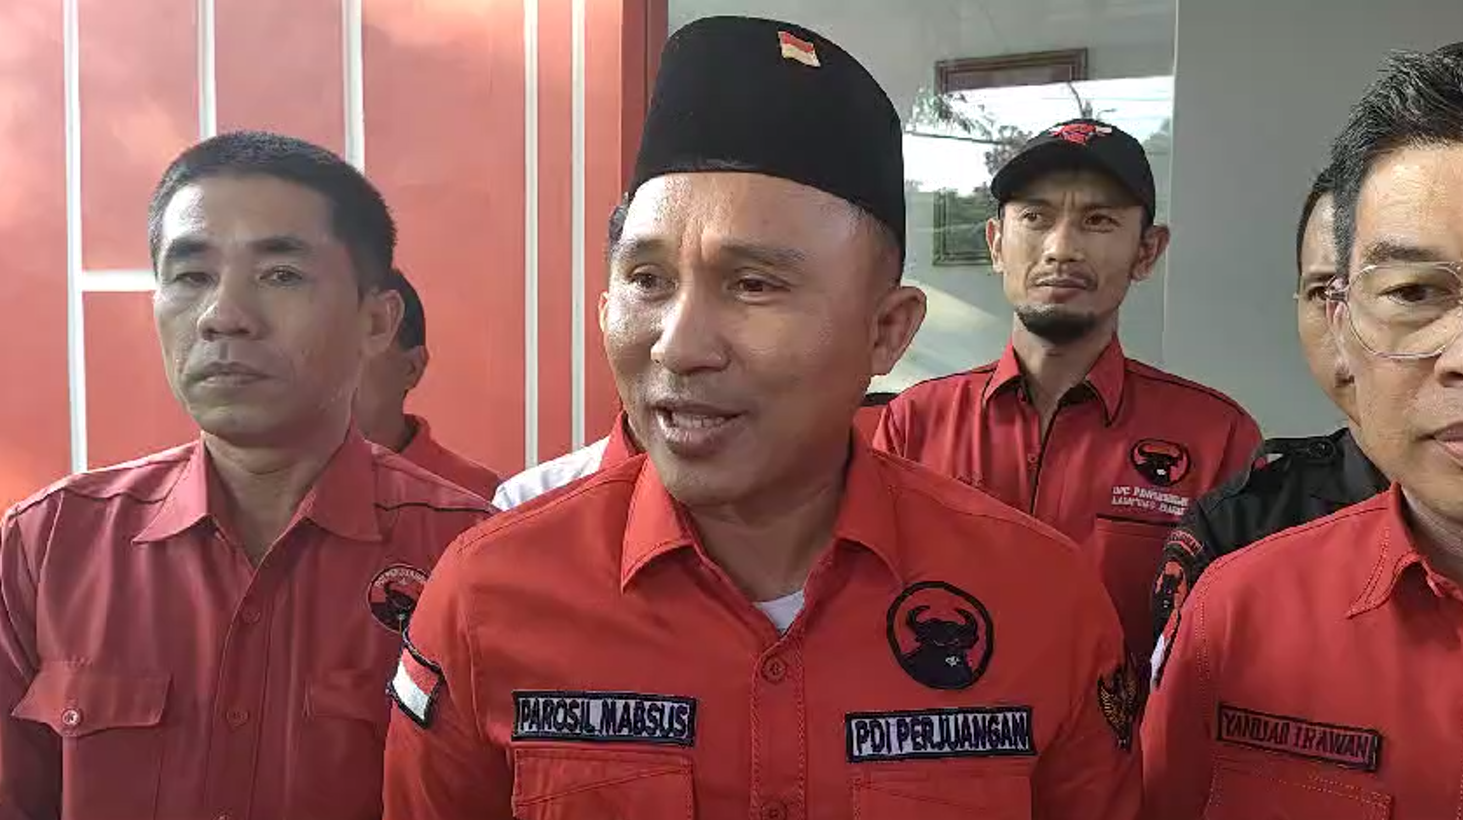 Pertama di Lampung, Parosil Mabsus Kantongi Surat Tugas PDIP Untuk Pilkada Lambar